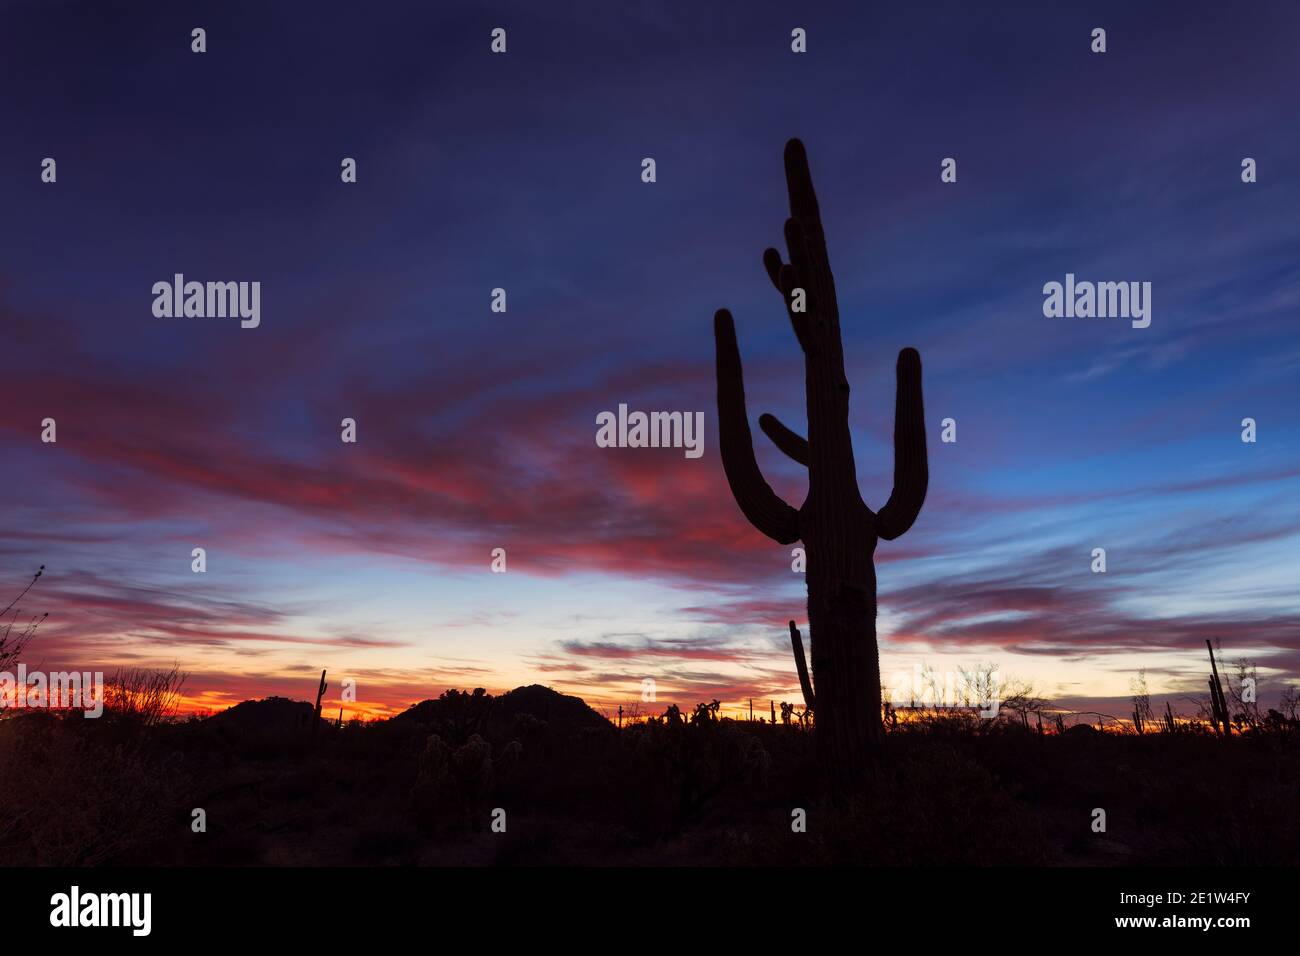 Paysage désertique pittoresque avec silhouette de Saguaro Cactus au coucher du soleil à Phoenix, Arizona Banque D'Images